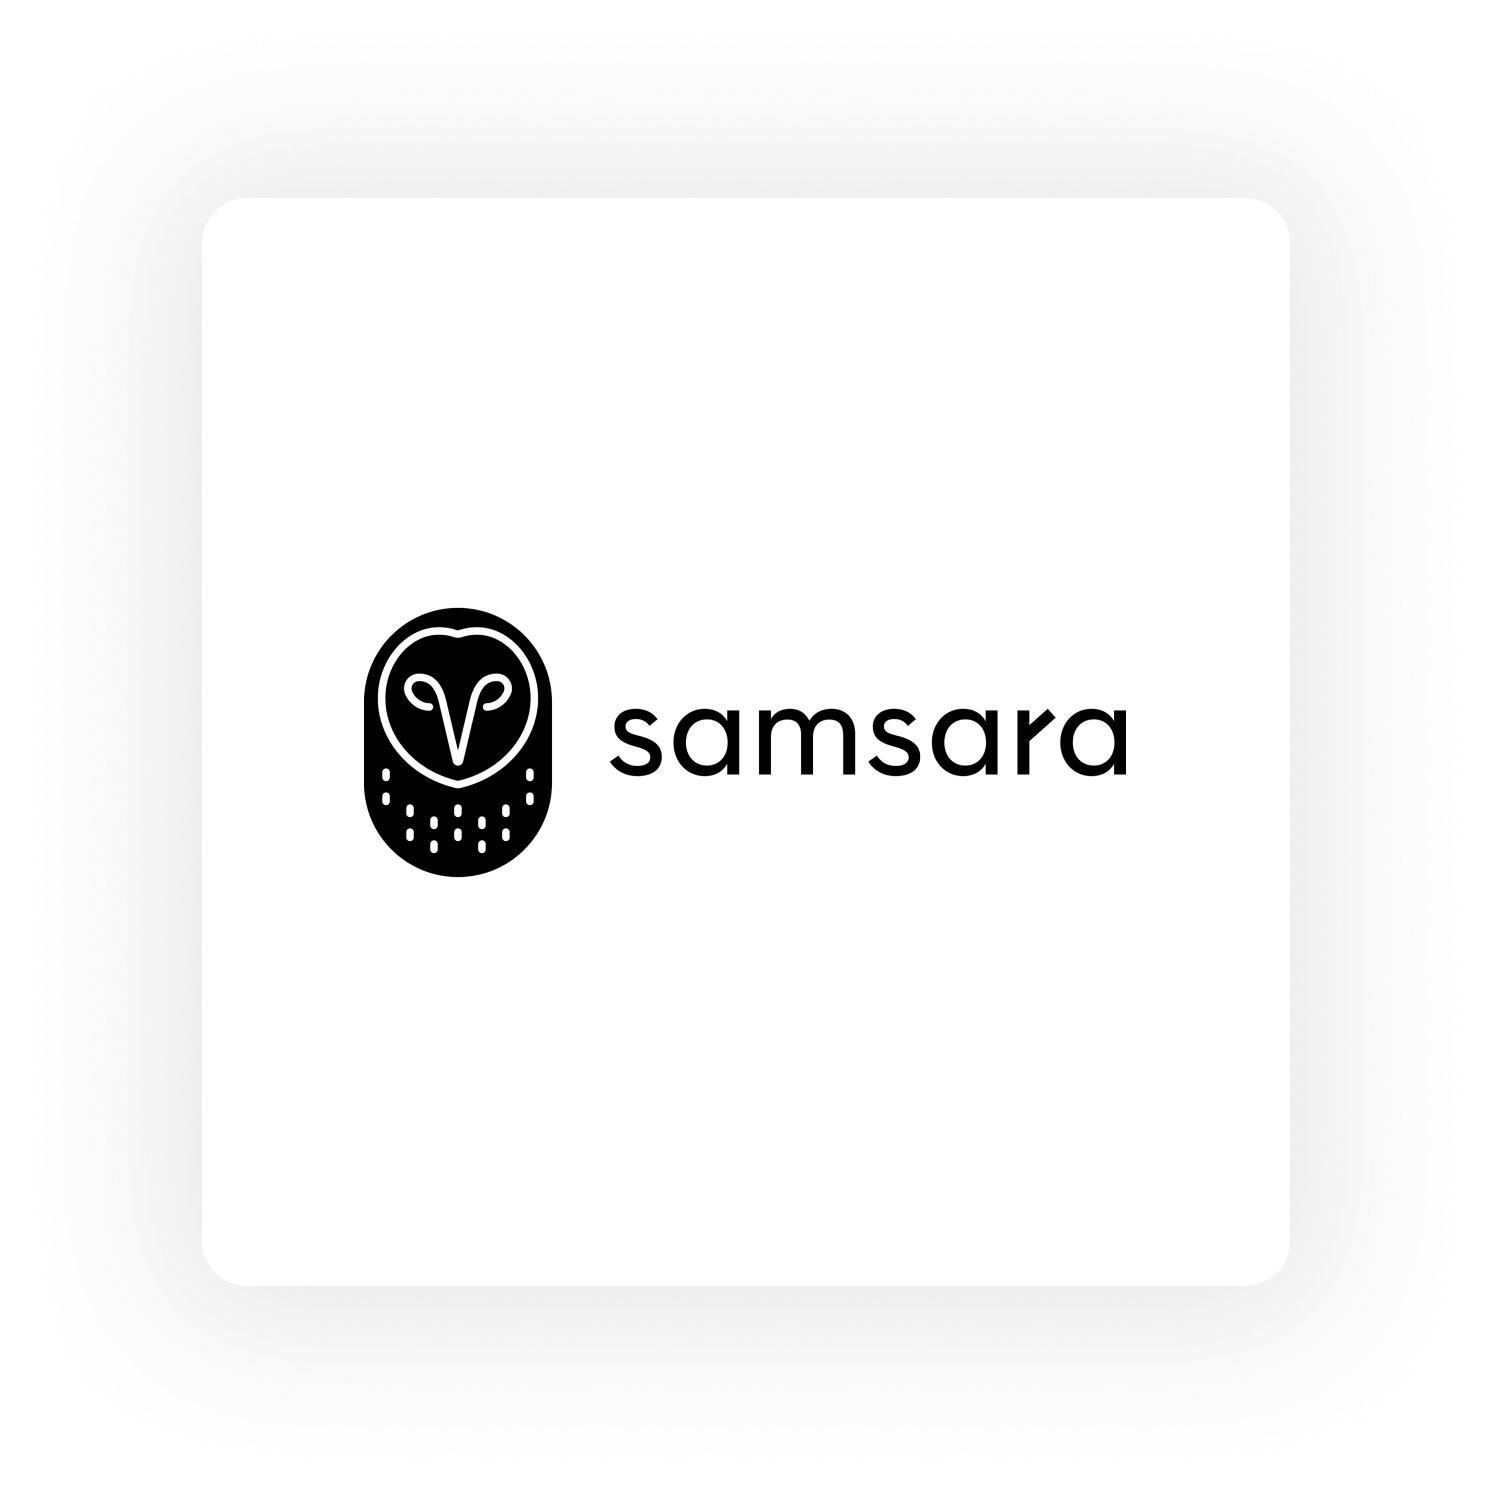 samsara integration partner